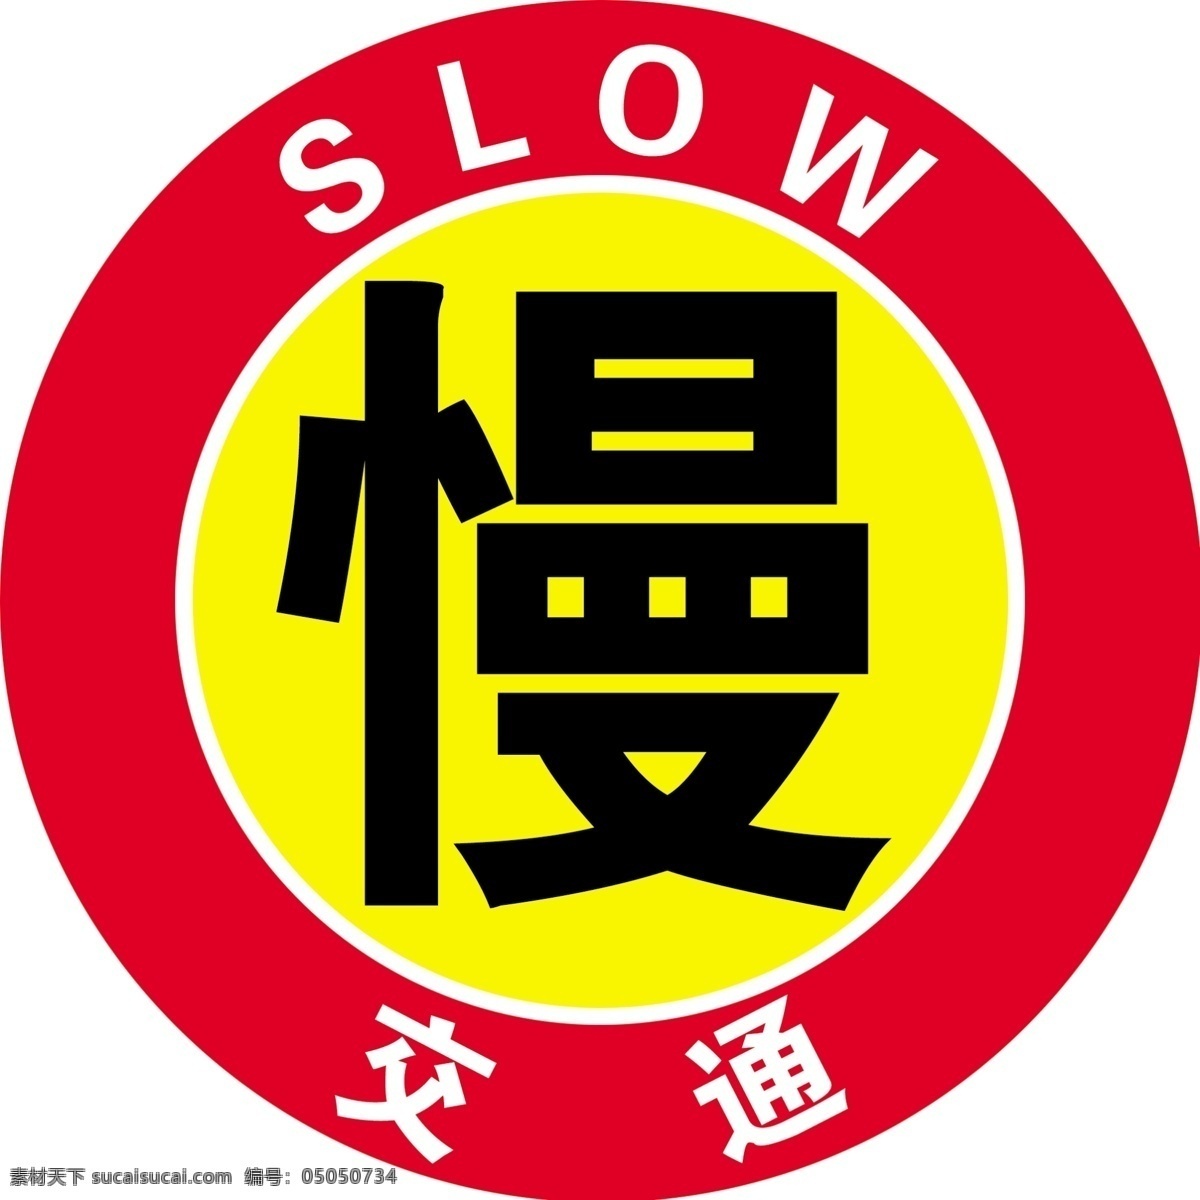 慢警示牌图片 交通牌 停 慢 警示 牌 交通标示 交通 路标 反光牌